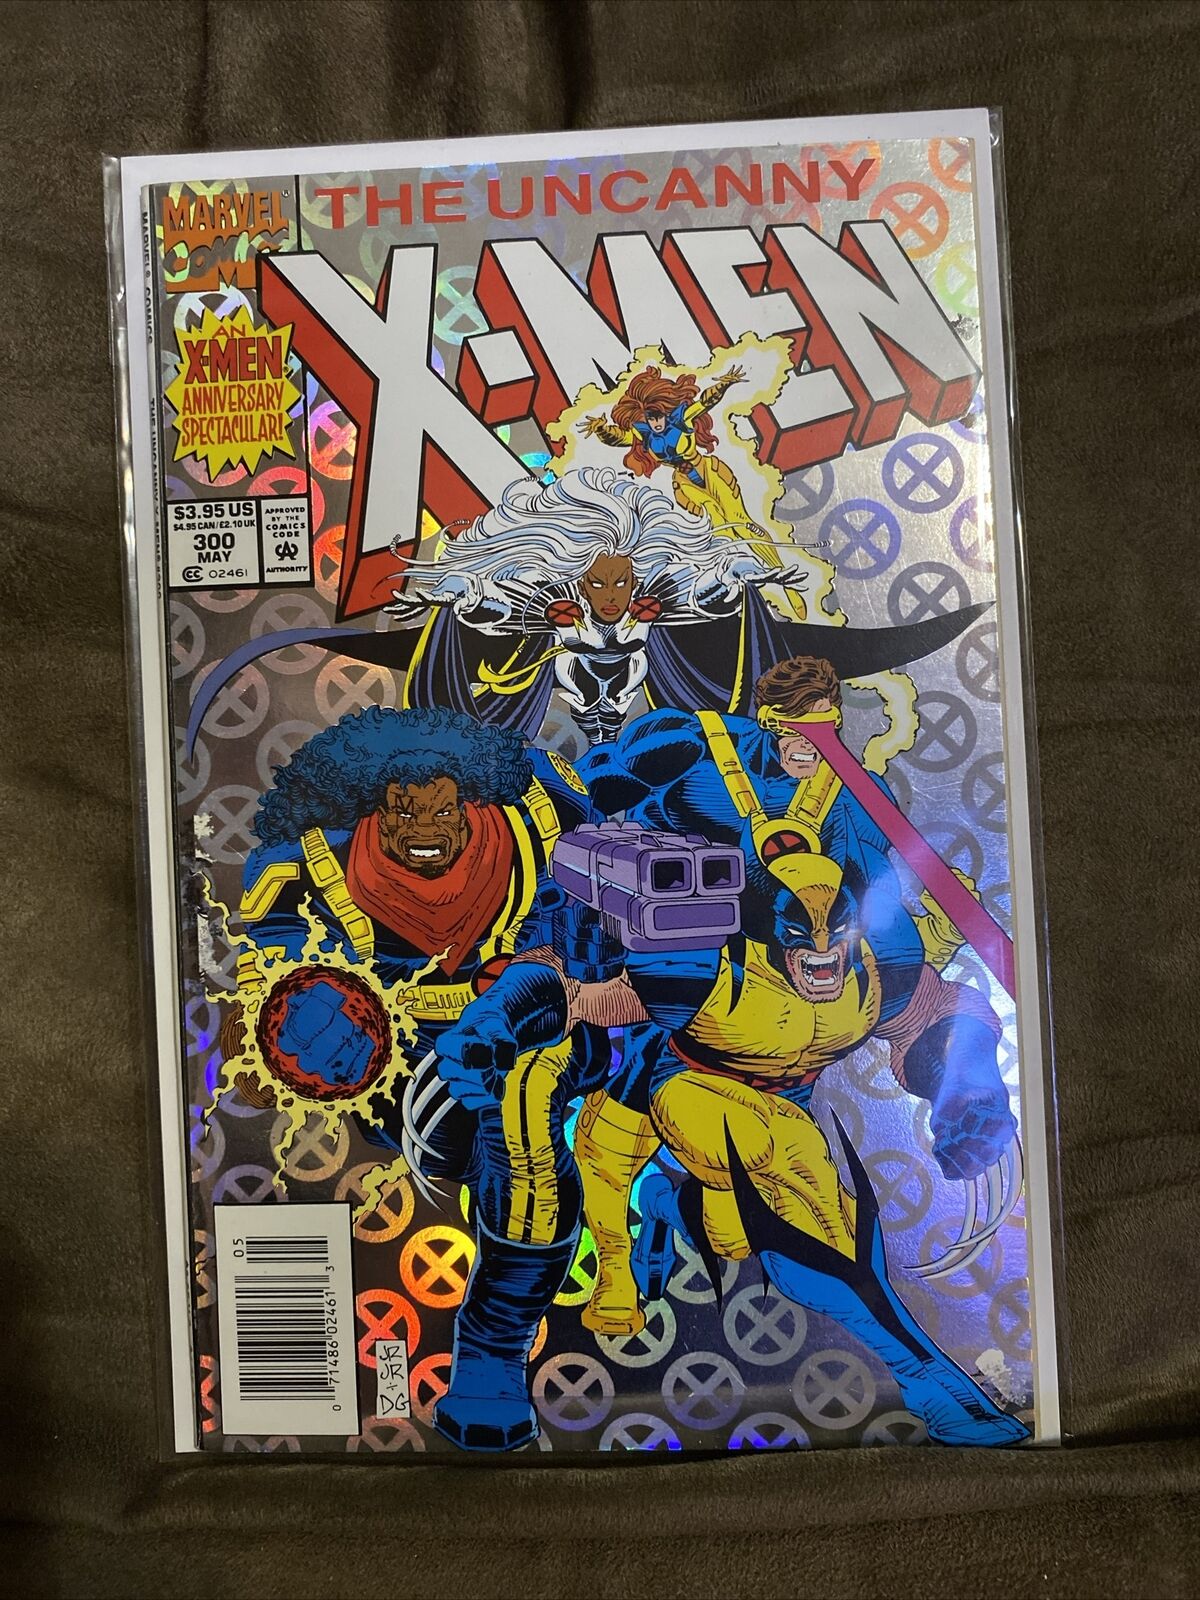 Uncanny X-Men #300 KEY 1st App Amelia Voght, Holofoil Cover newsstand var 1993